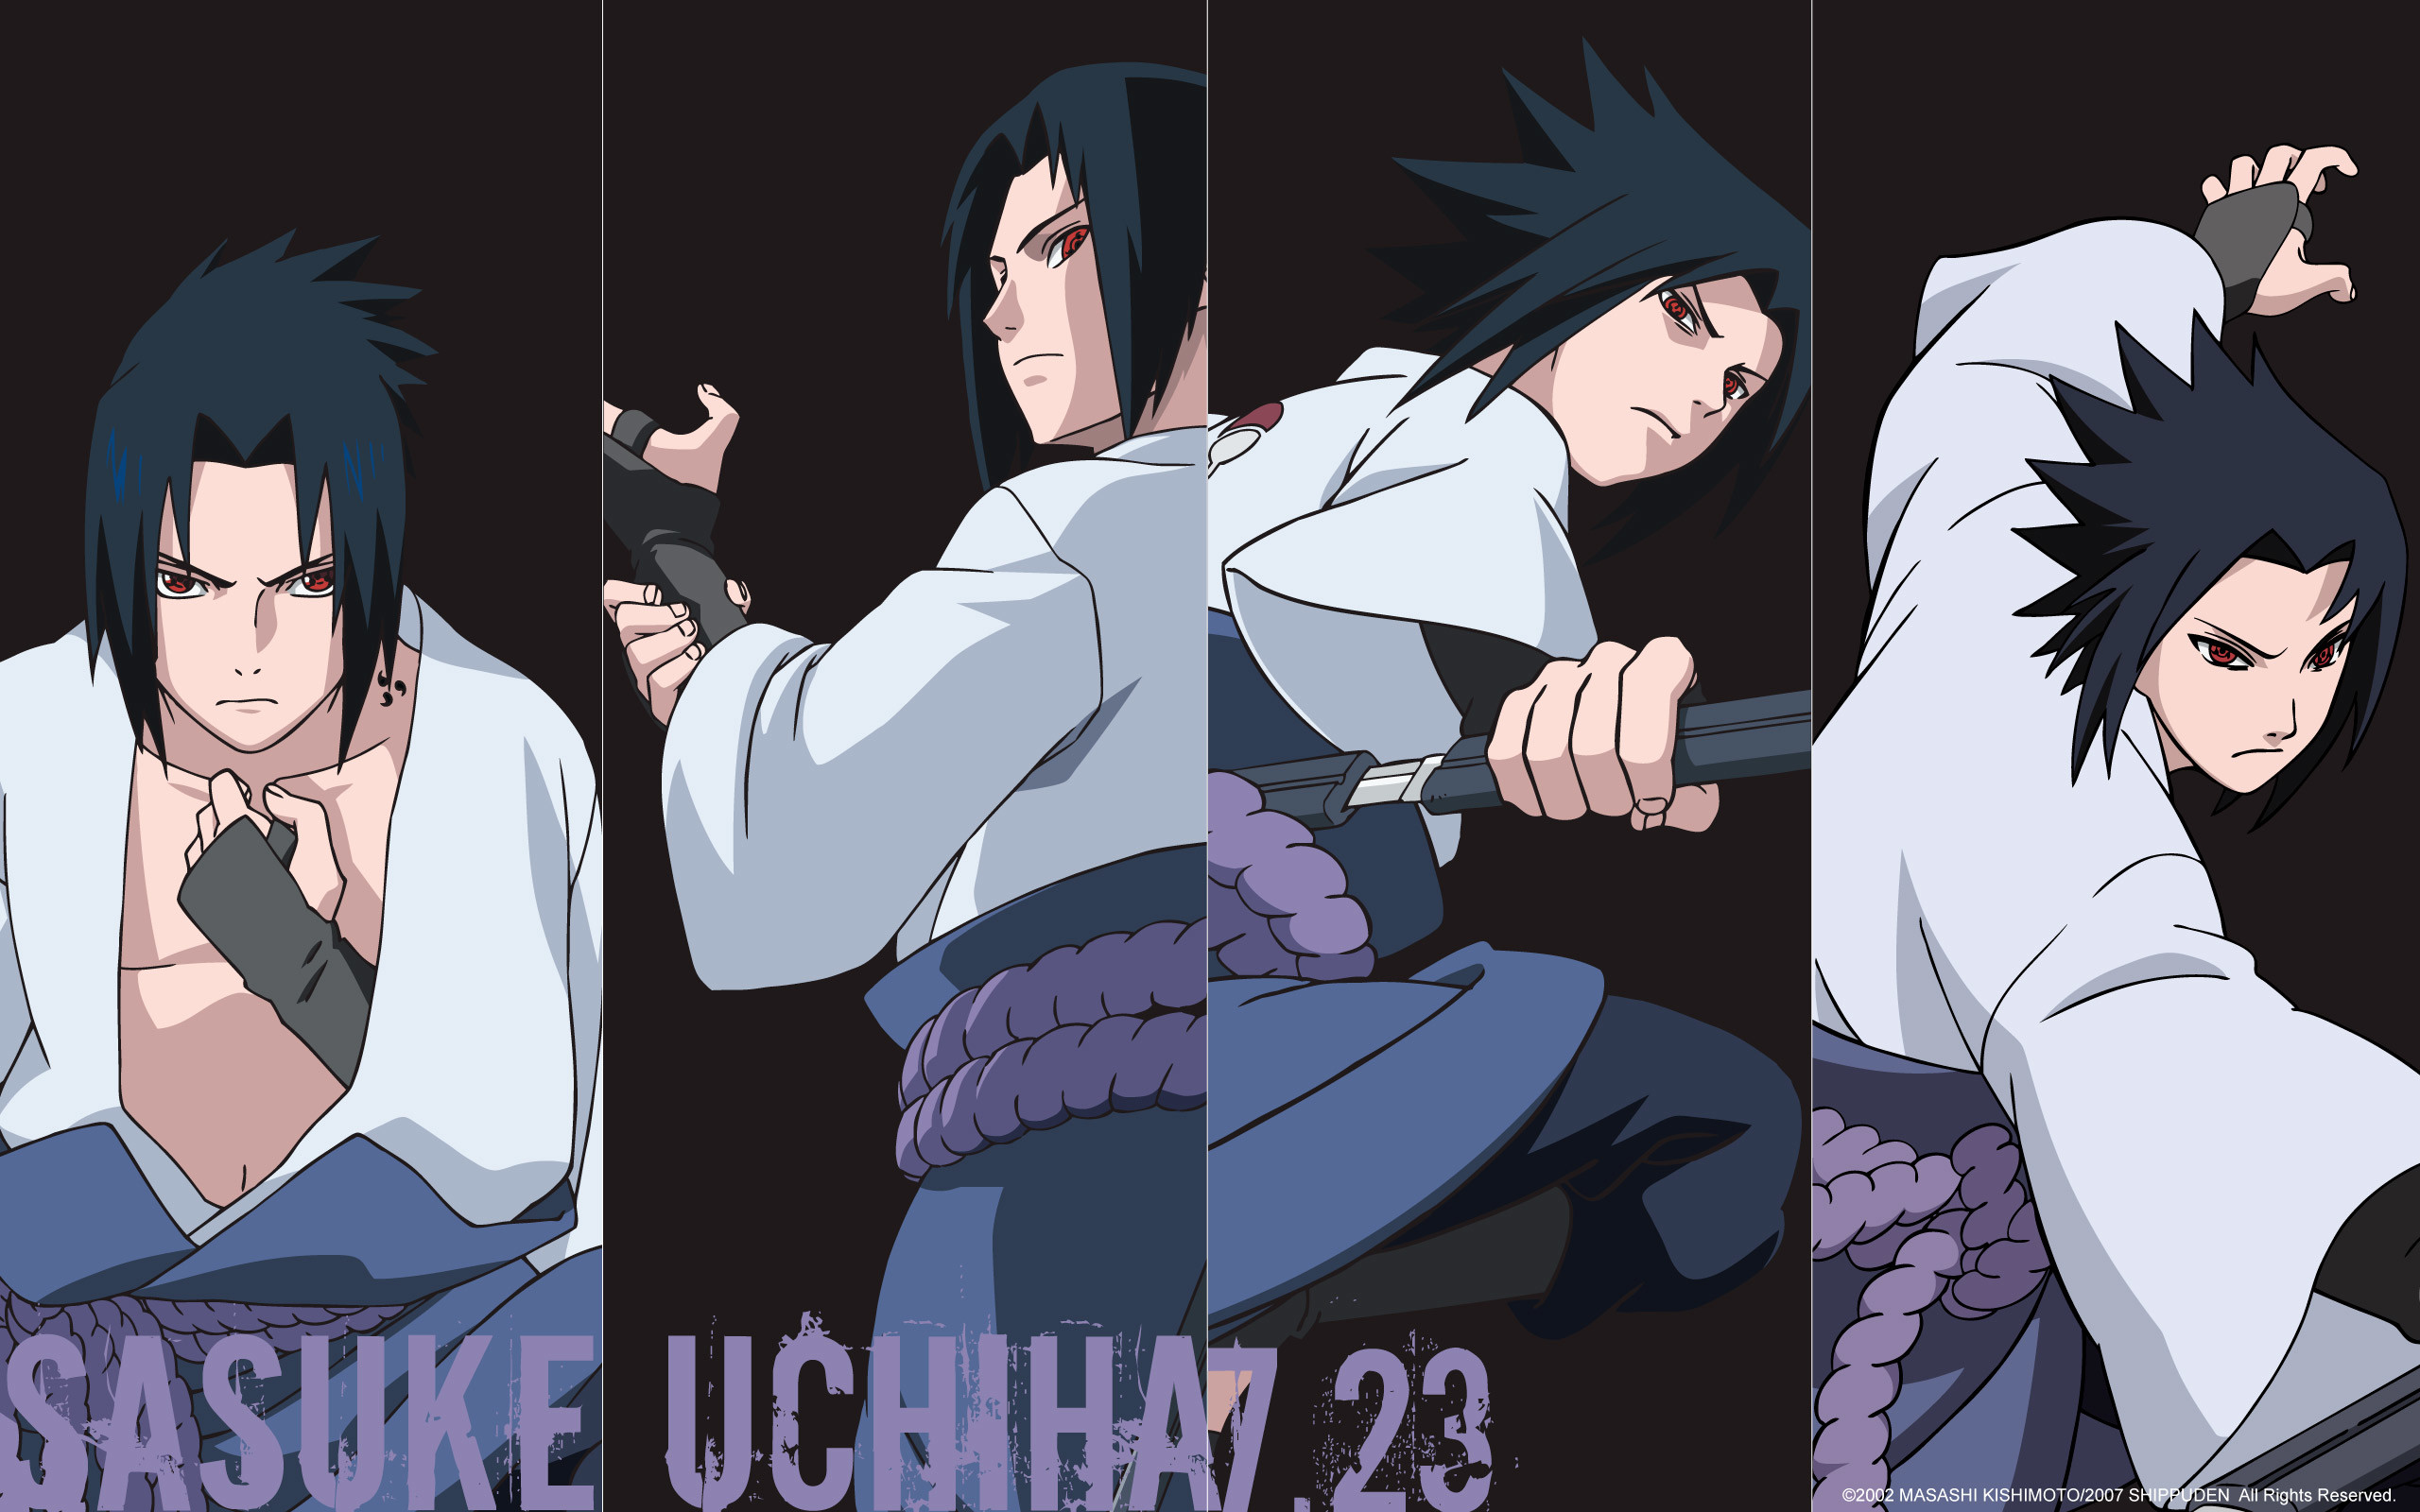 2560x1600 Uchiha Sasuke images Uchiha Sasuke HD wallpaper and background photos